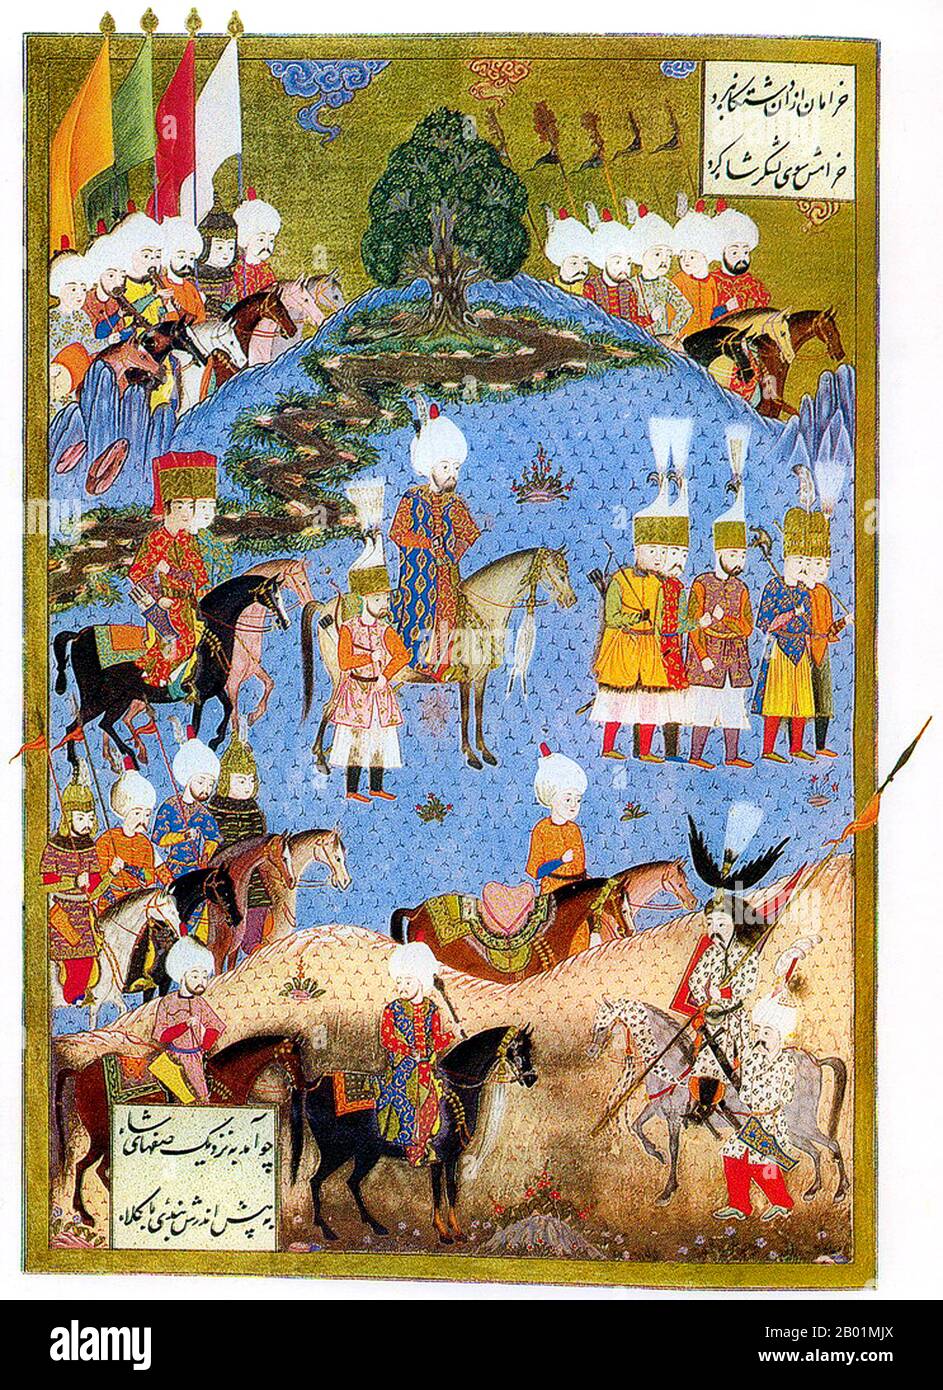 Turquie : Suleiman le magnifique (6 novembre 1494 - 6 septembre 1566) à la tête de l'armée ottomane à Nakhitchevan, été 1554. Peinture miniature de Matrakçı Nasuh (1480-1564) avec poésie persane de Fethullah Çelebi Arifi, 1561. Le sultan Suleyman Ier, également connu sous les noms de « Suleyman le magnifique » et « Suleyman le législateur », était le 10e et le plus long sultan régnant de l'empire ottoman. Il conduisit personnellement ses armées à conquérir la Transylvanie, la Caspienne, une grande partie du Moyen-Orient et le Maghreb. Il a introduit des réformes radicales dans la législation turque, l'éducation, la fiscalité et le droit pénal, Banque D'Images